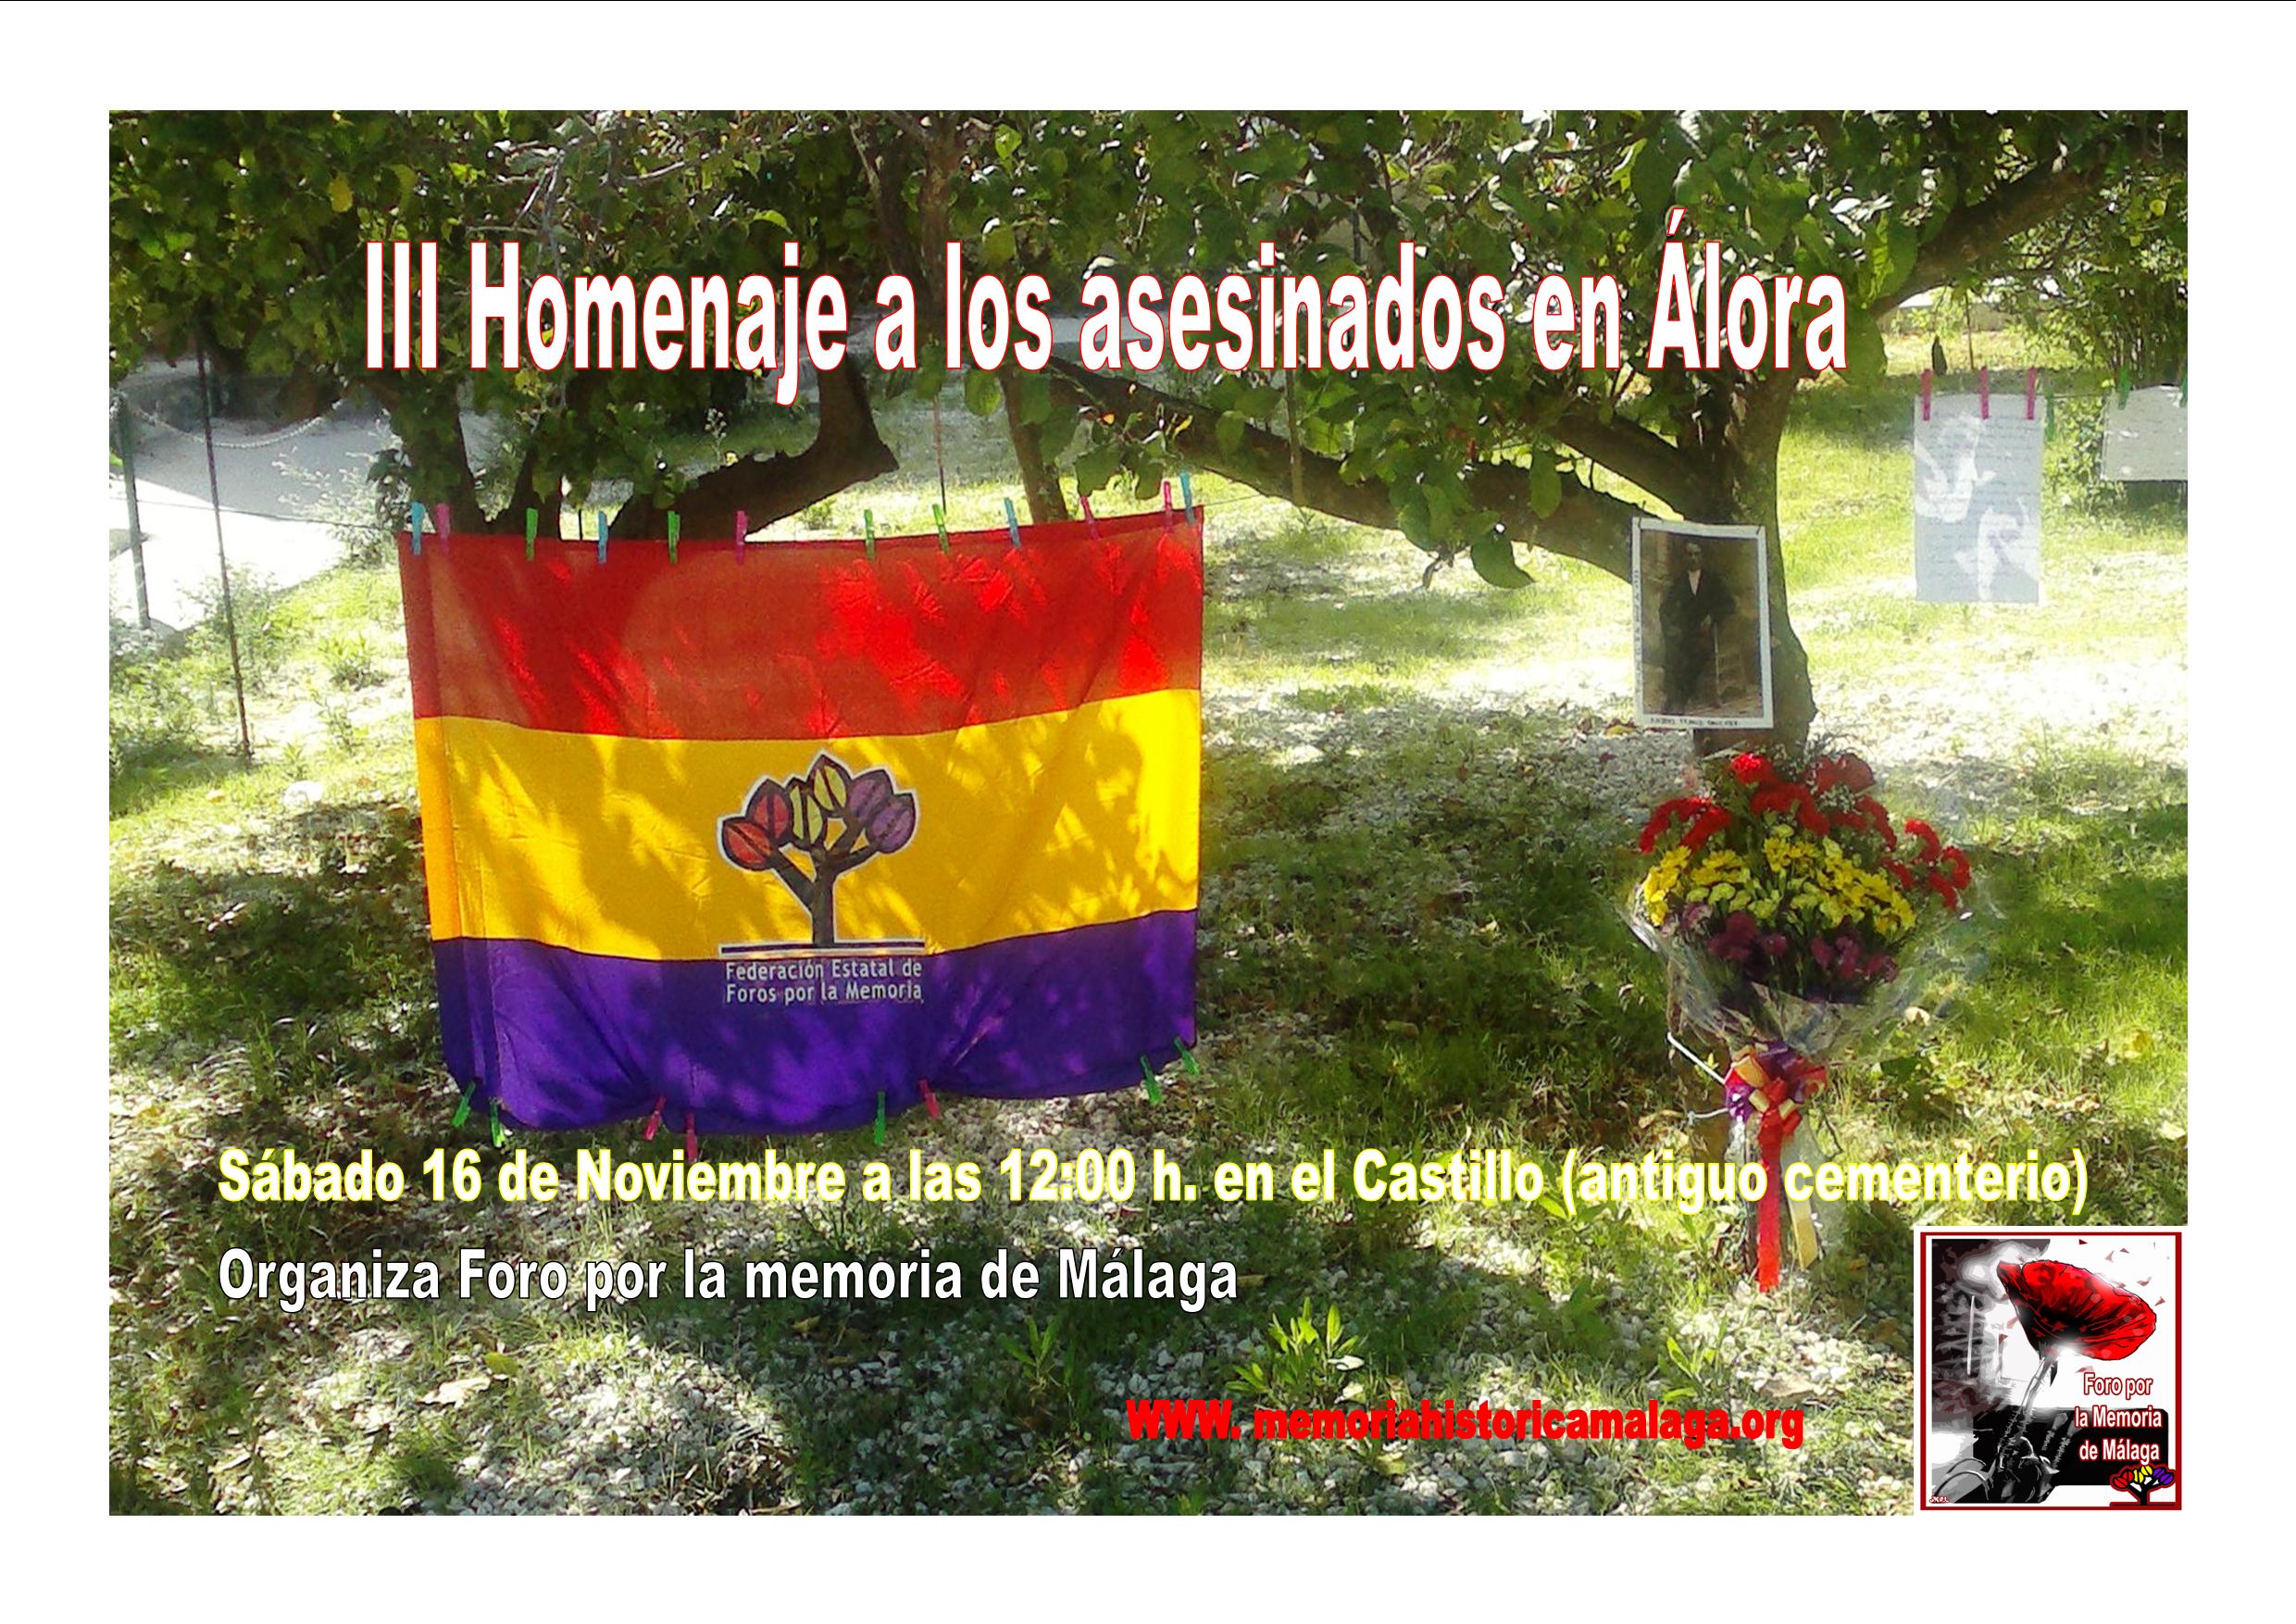 III Homenaje a los asesinados por el Franquismo en Álora